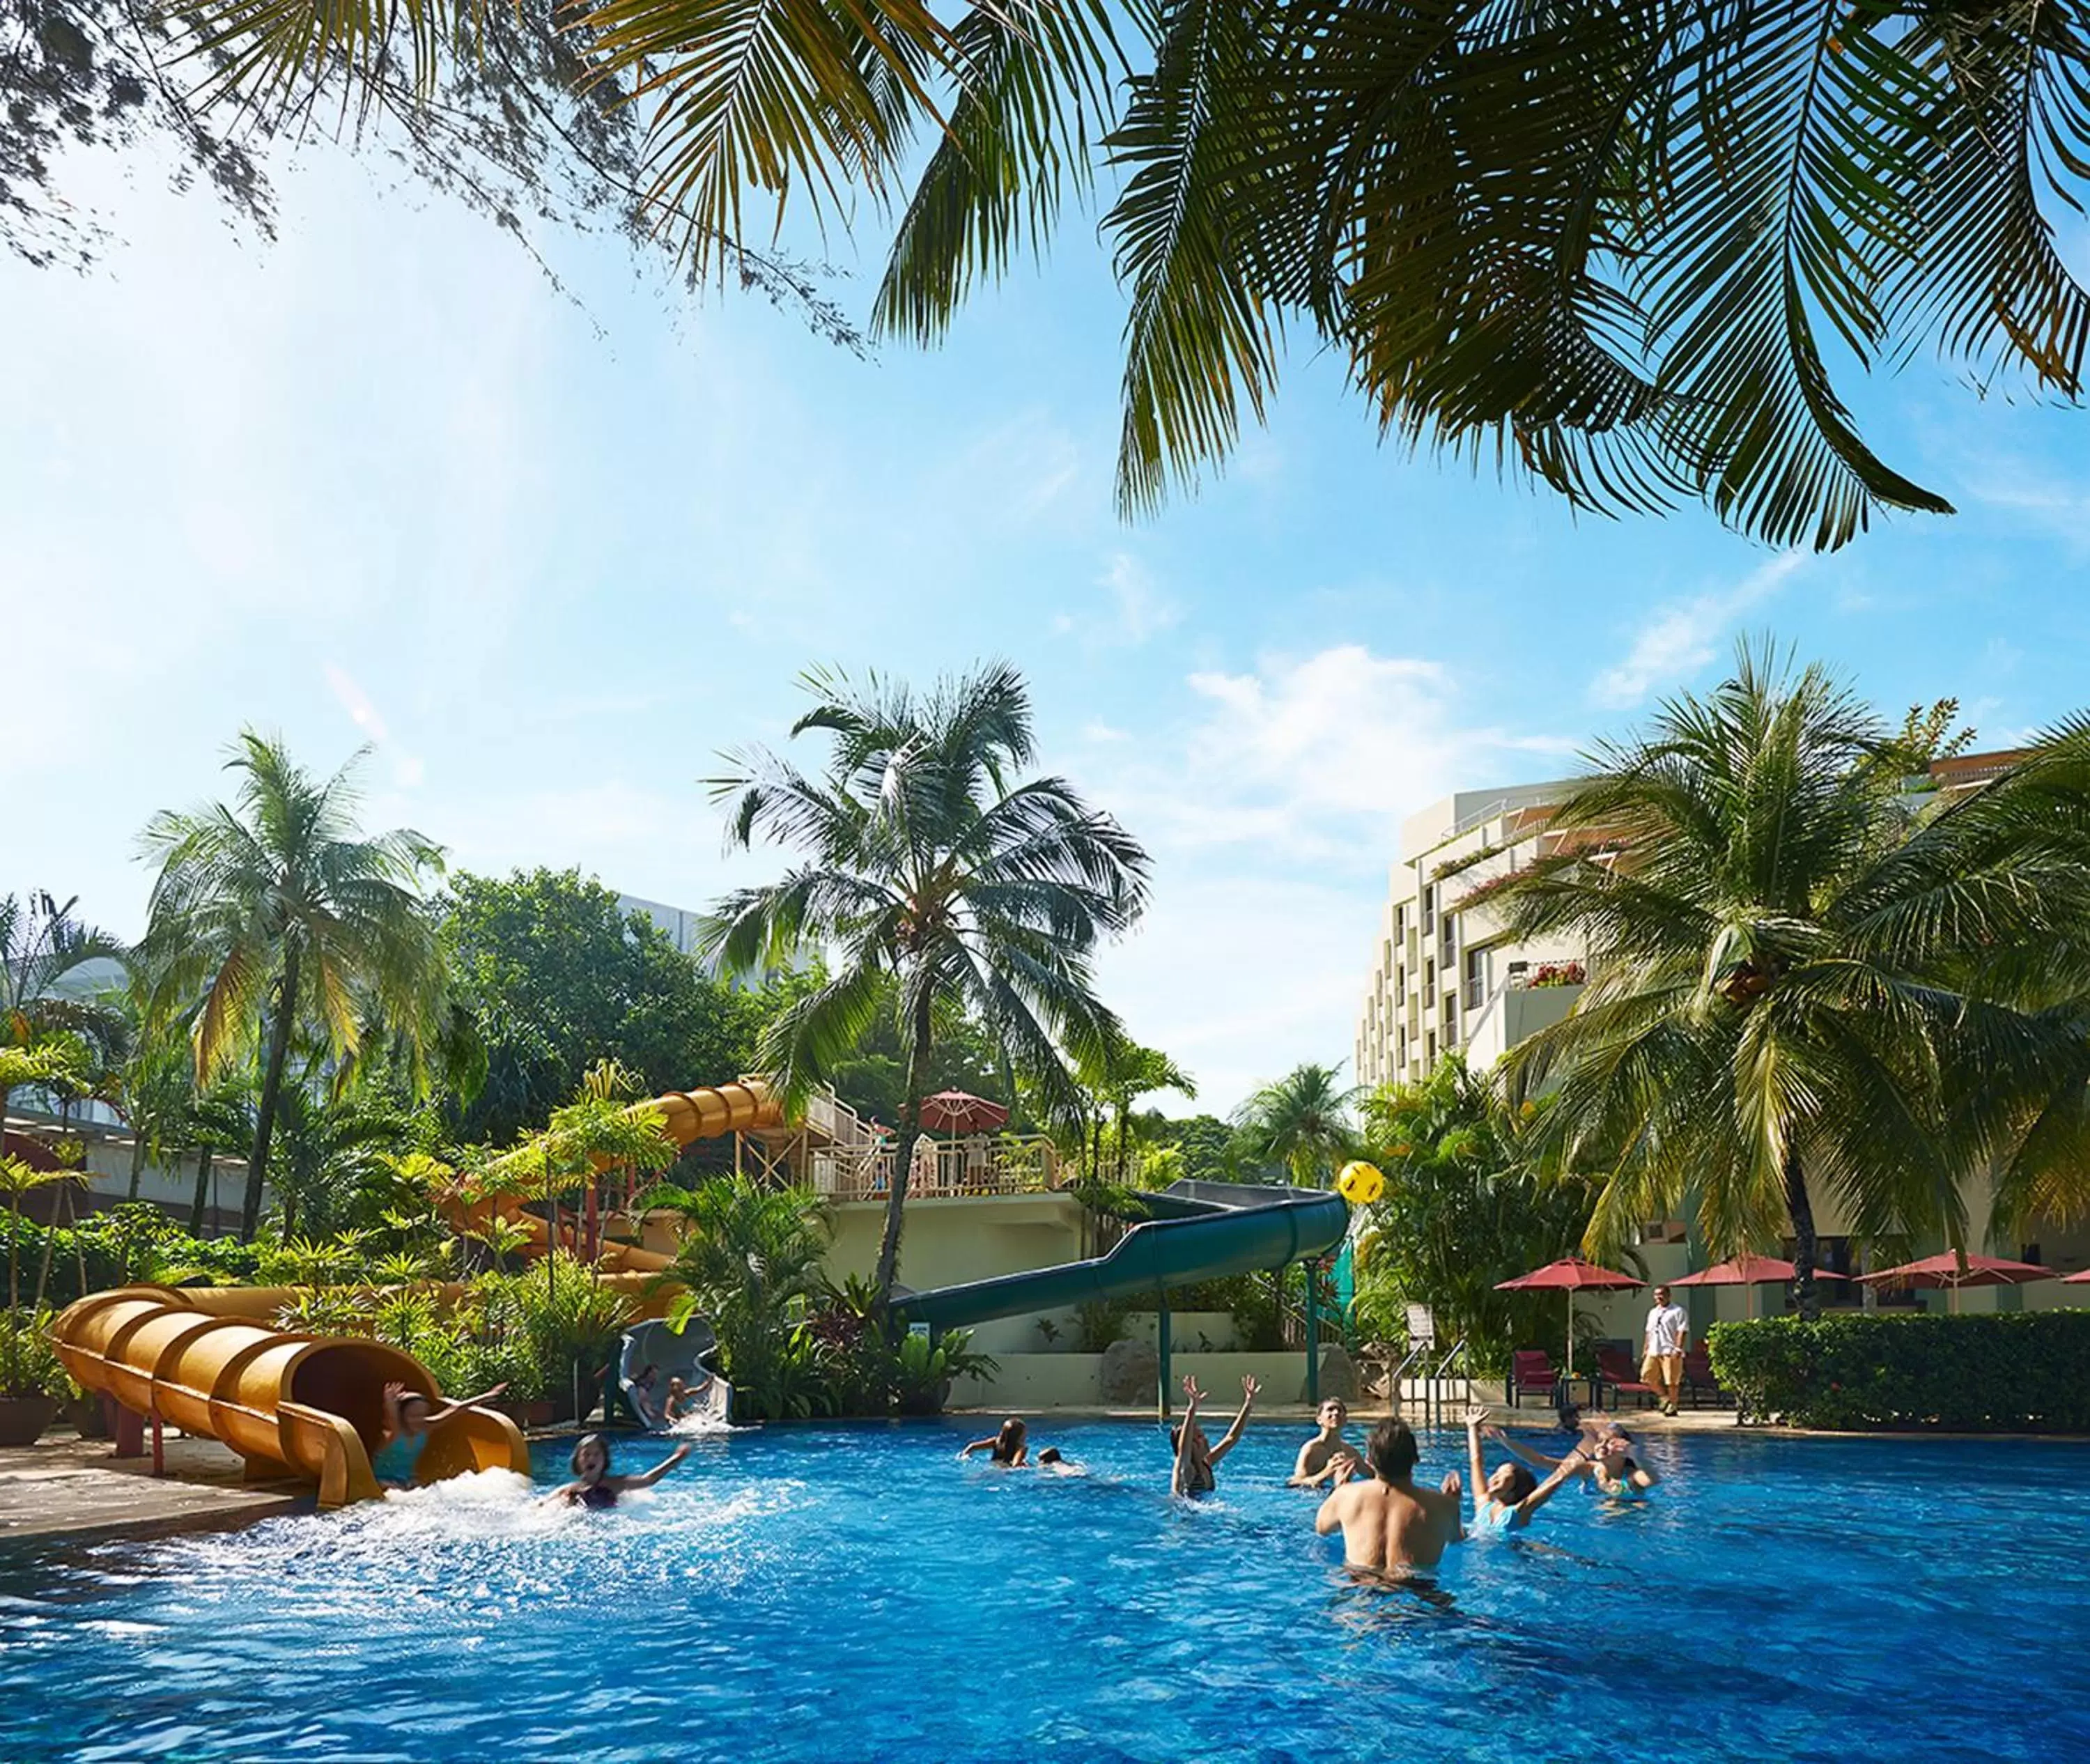 Swimming Pool in PARKROYAL Penang Resort